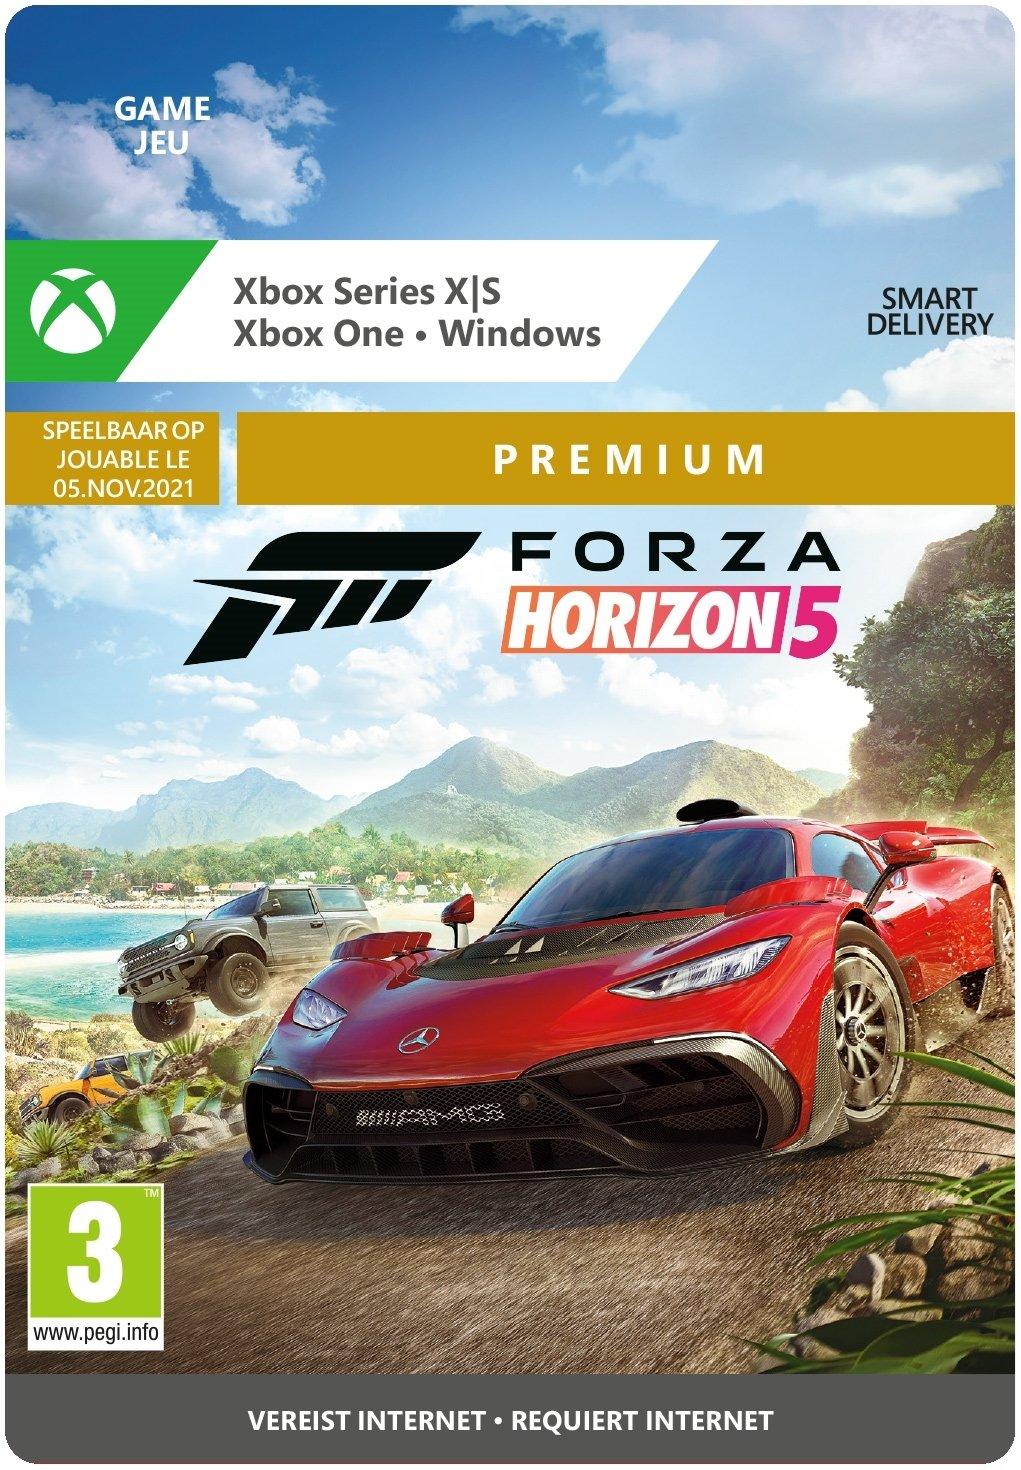 Forza Horizon 5: Premium Edition - Xbox Series X/Xbox One/Win10 - Game | G7Q-00126 (f1c3e47c-2a4d-be4b-84d8-0a6a387ed509)